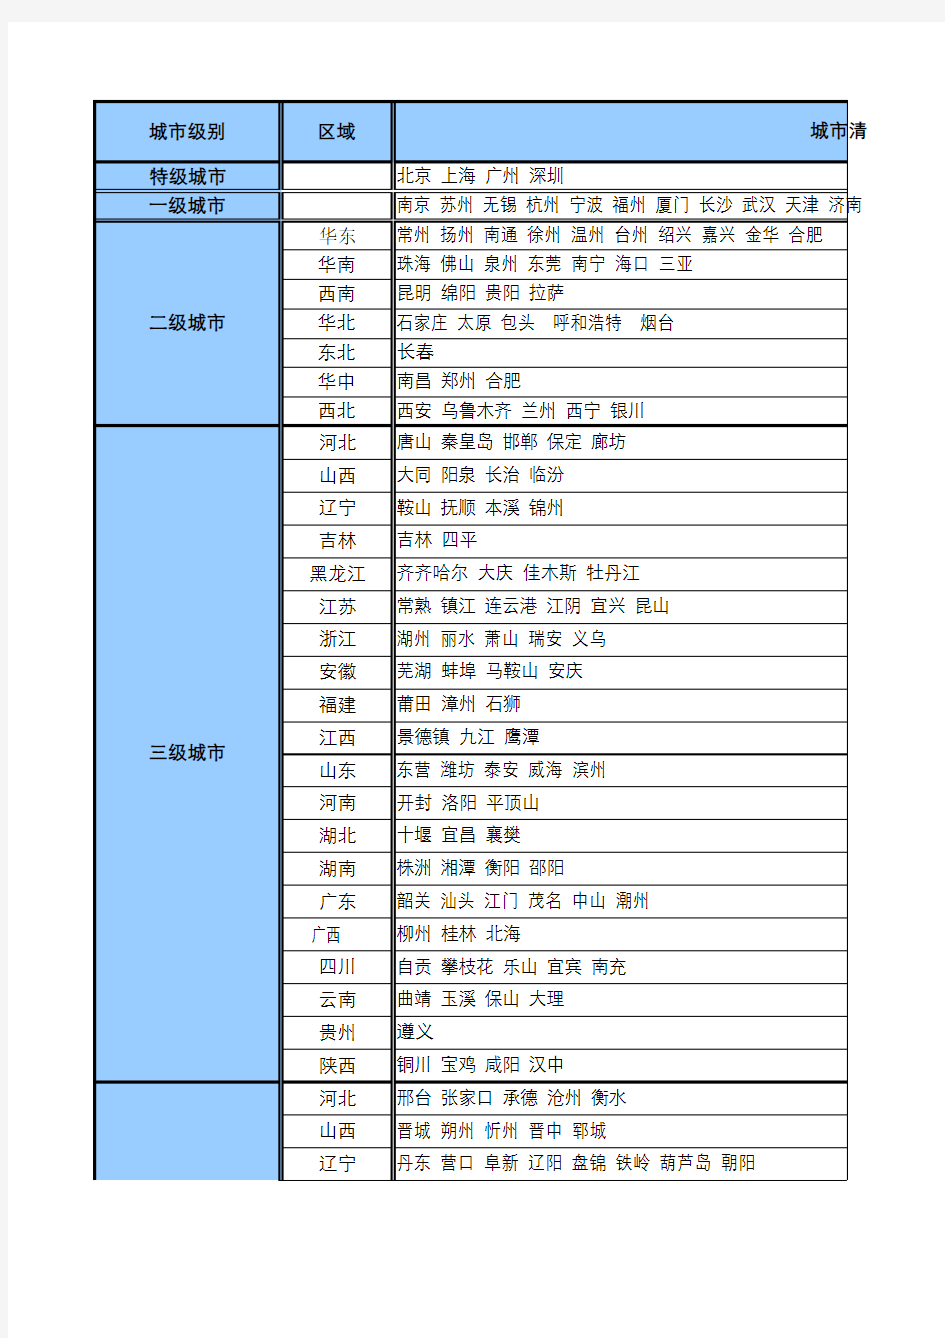 2014年中国城市一、二、三、四级别分类